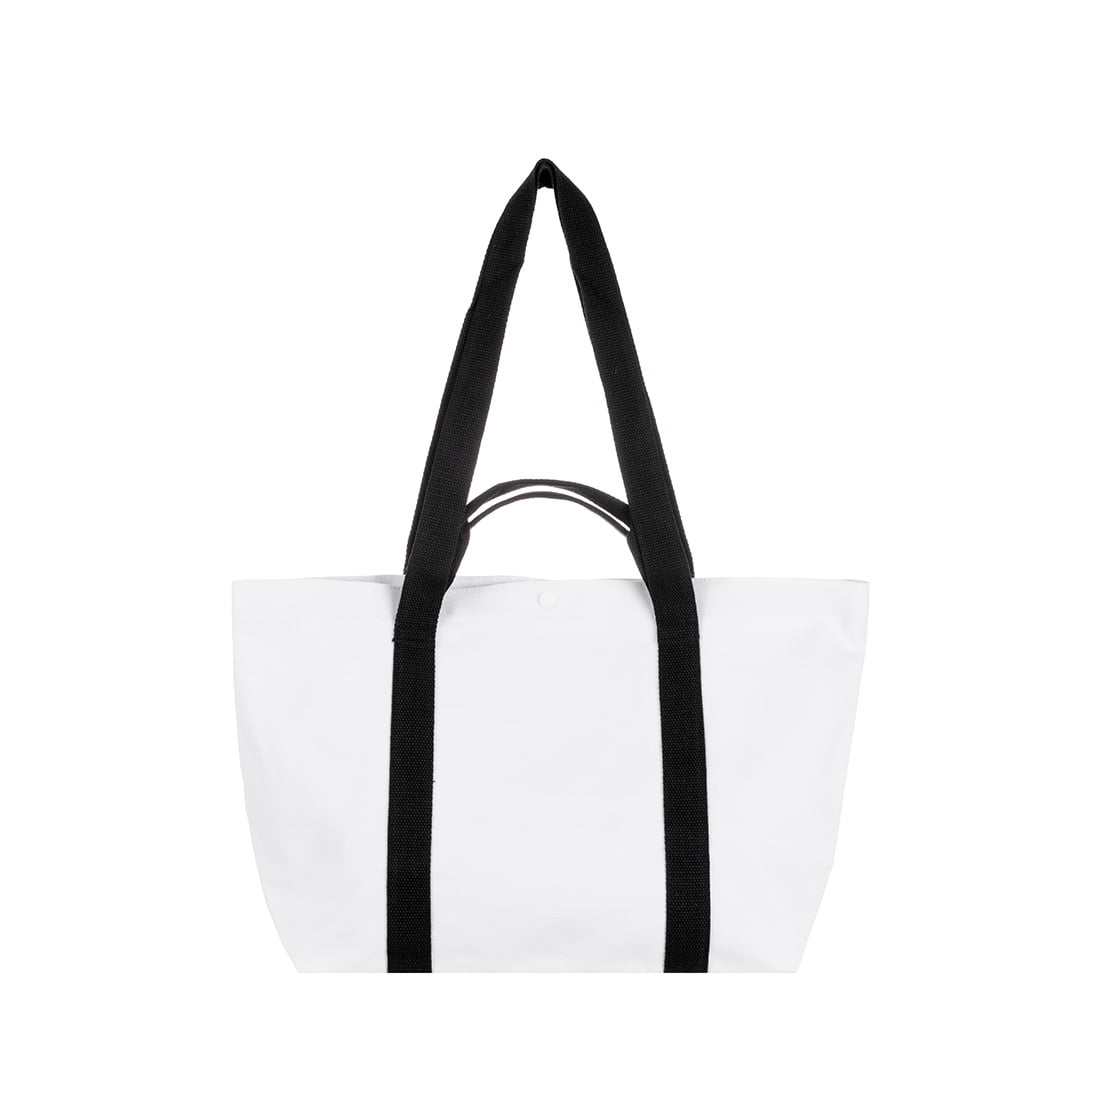 MINISO MARVEL- Embroidered Shopping Bag,Black